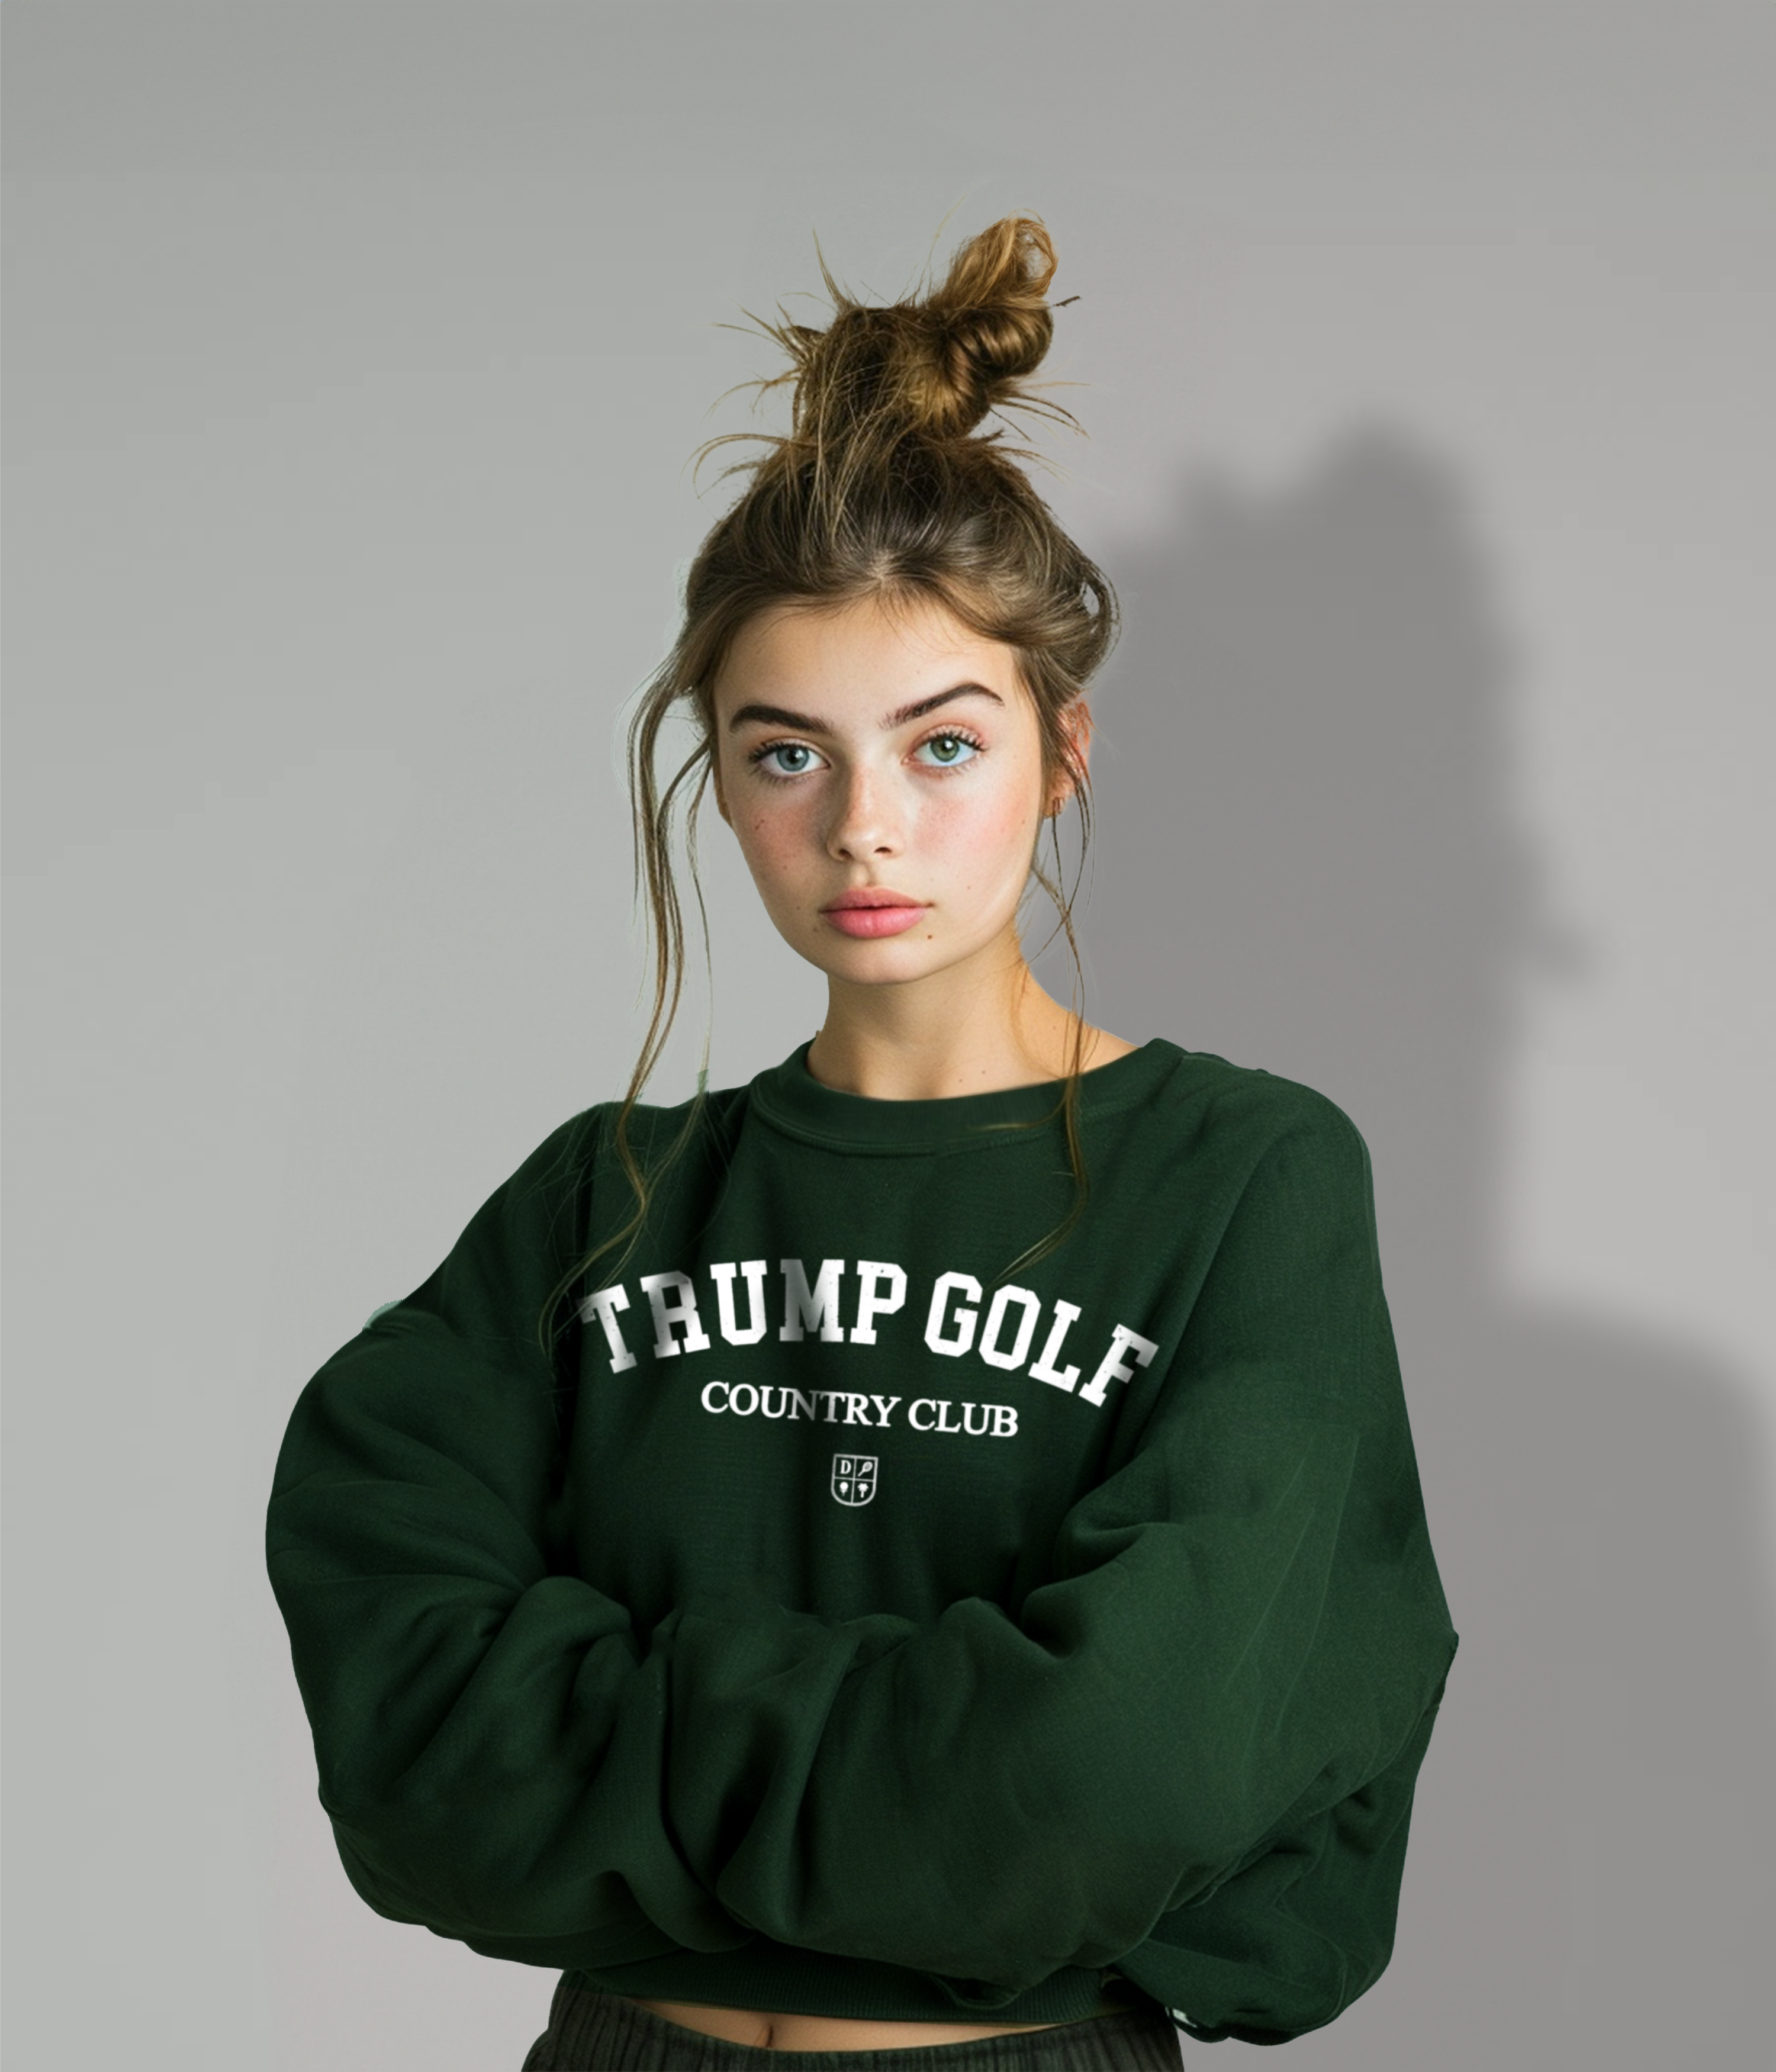 Trump Golf Country Club Sweatshirt